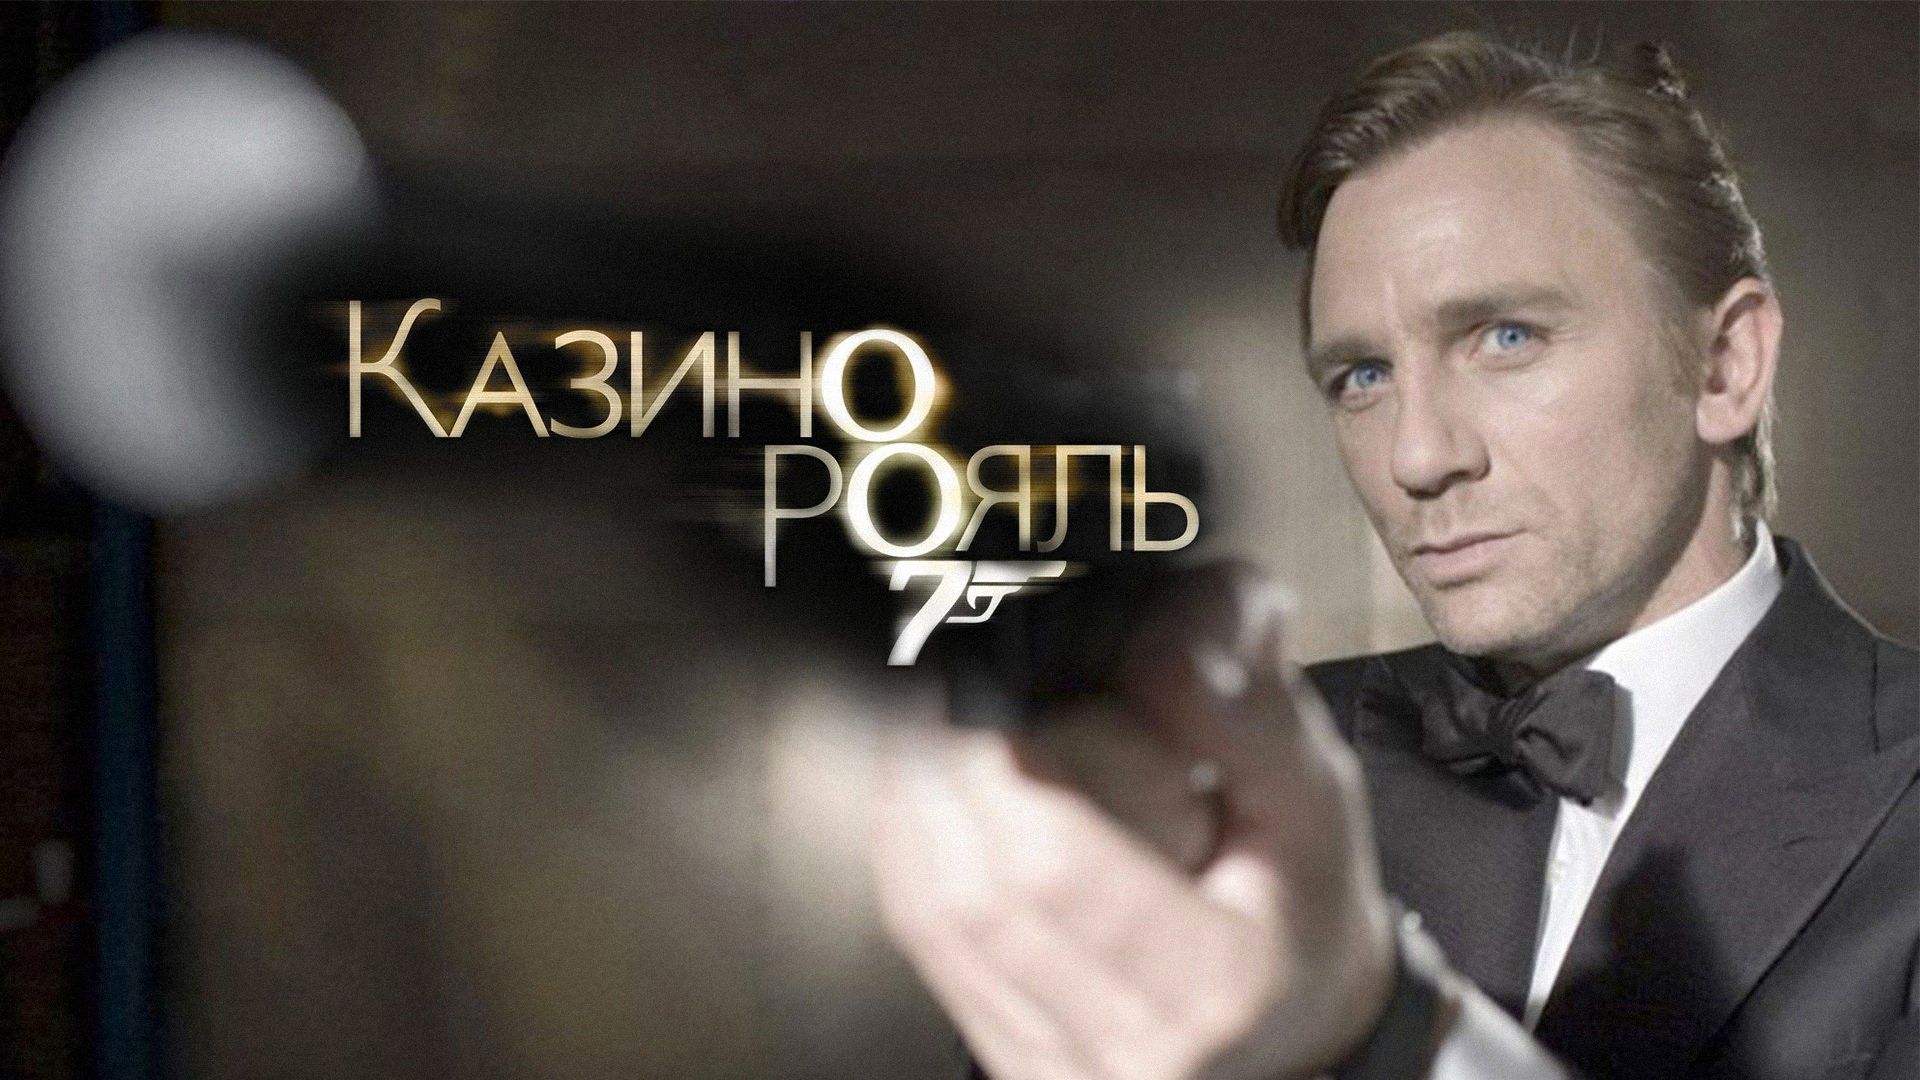 Фильм смотреть онлайн агент 007 казино рояль как играть на карте с другом в майне